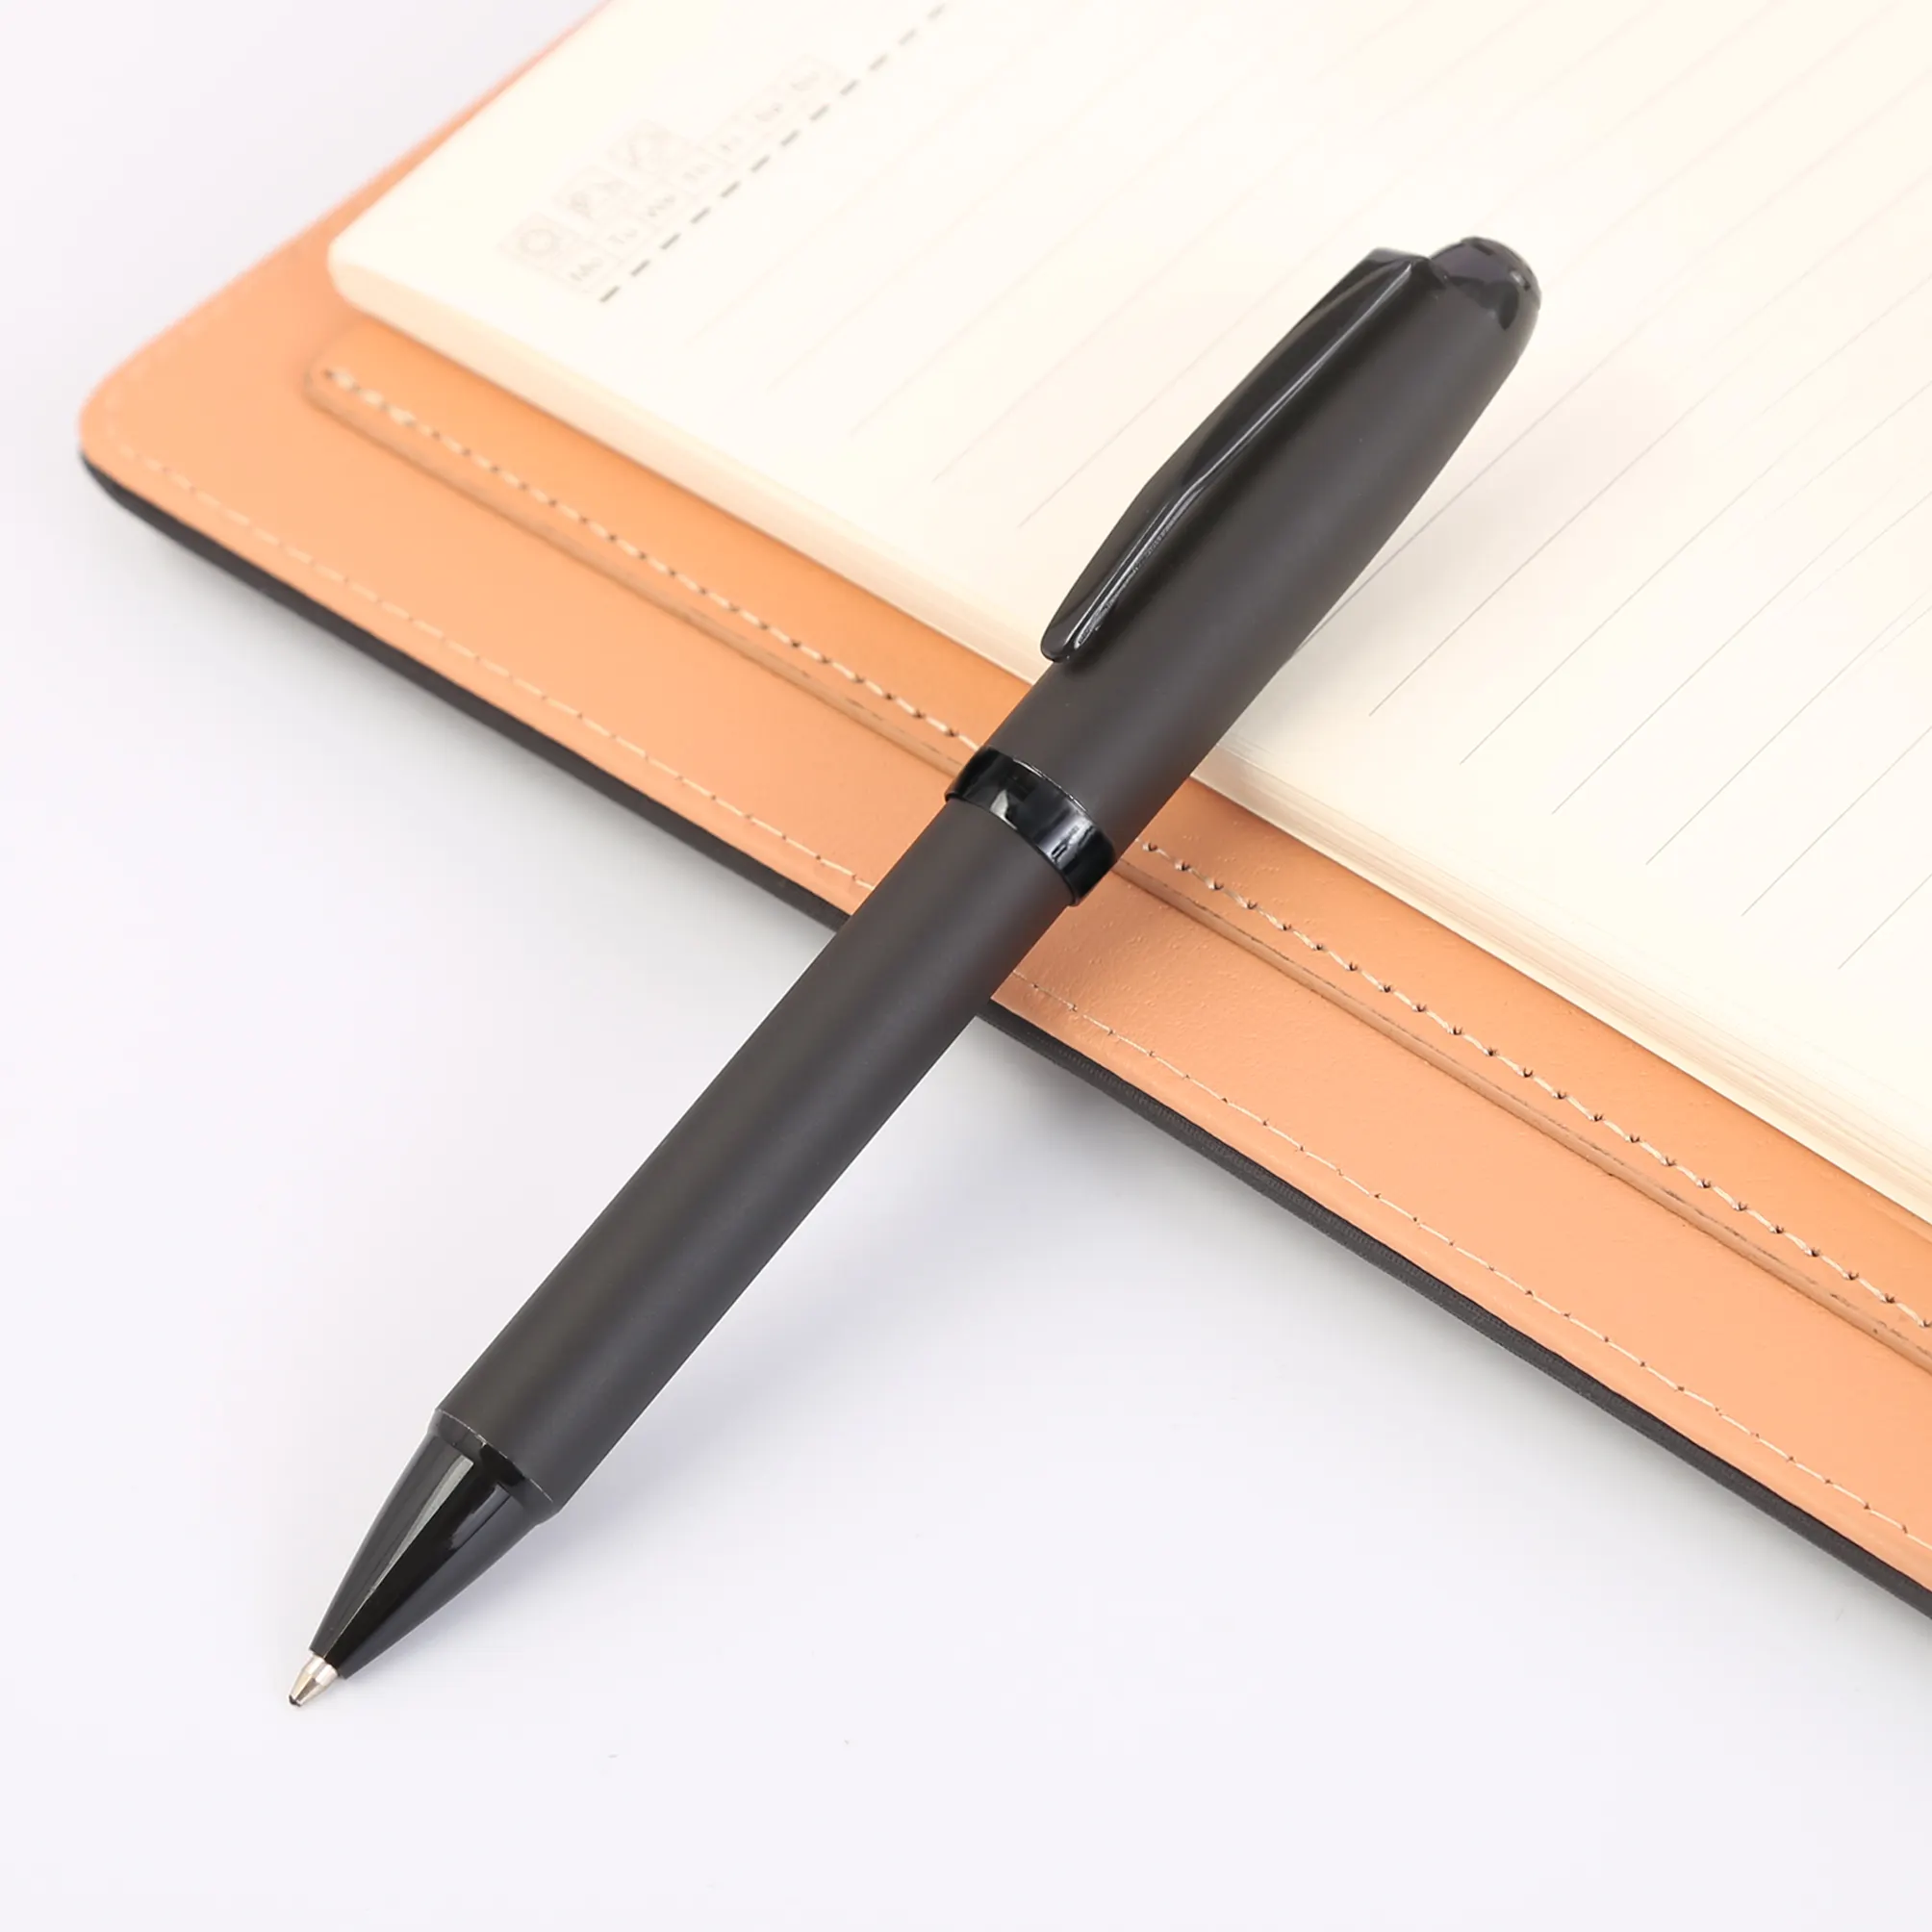 TTX 맞춤형 새로운 간단한 디자인 스타일러스 프로모션 선물 펜 세트 학교 볼펜 사용자 정의 펜 로고 인쇄